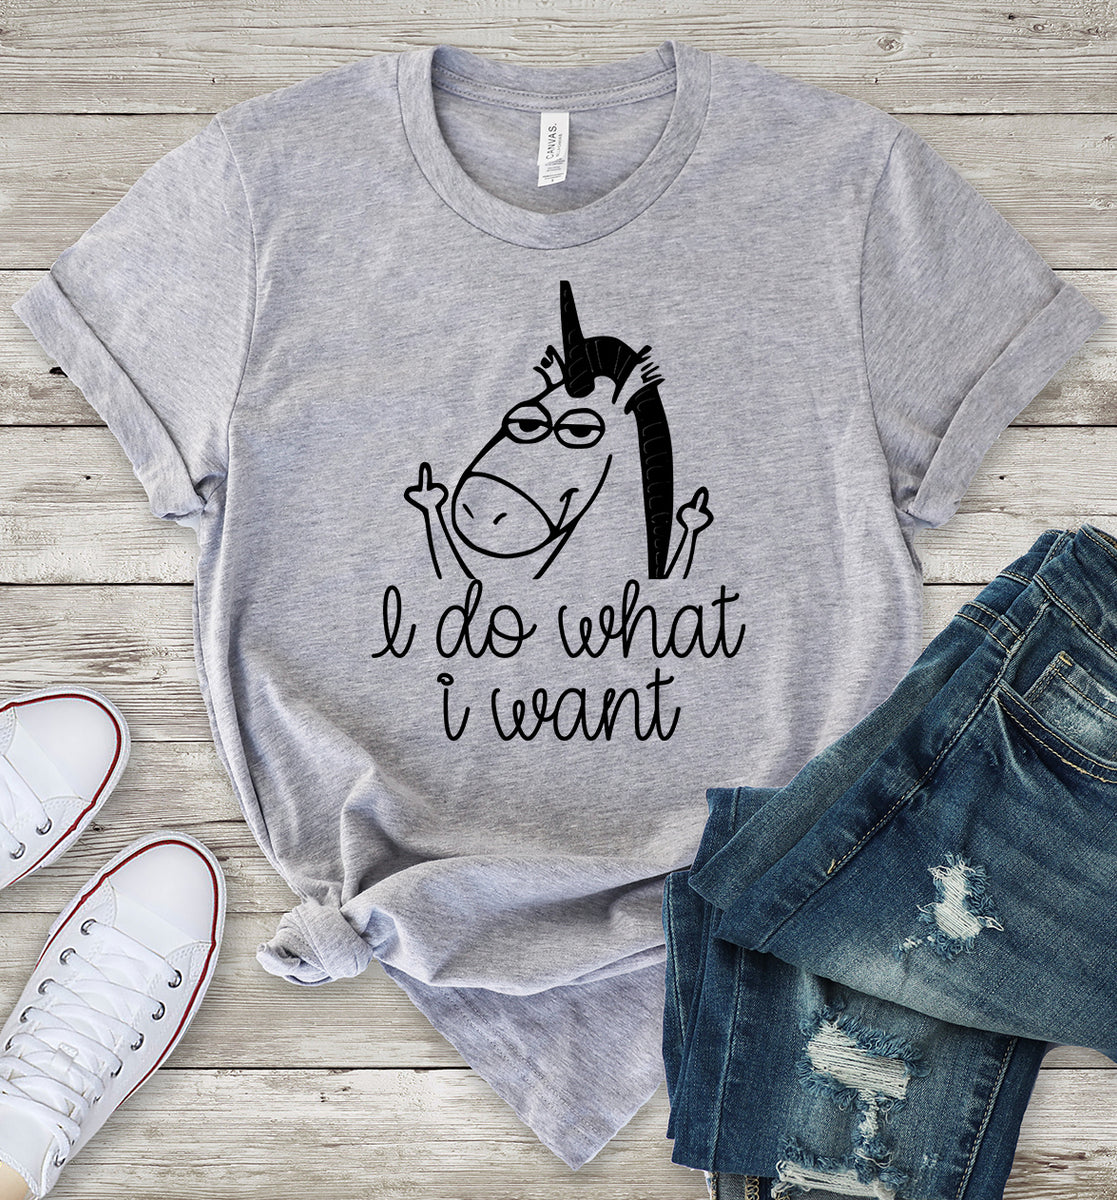 I Do What I Want Unicorn T-Shirt